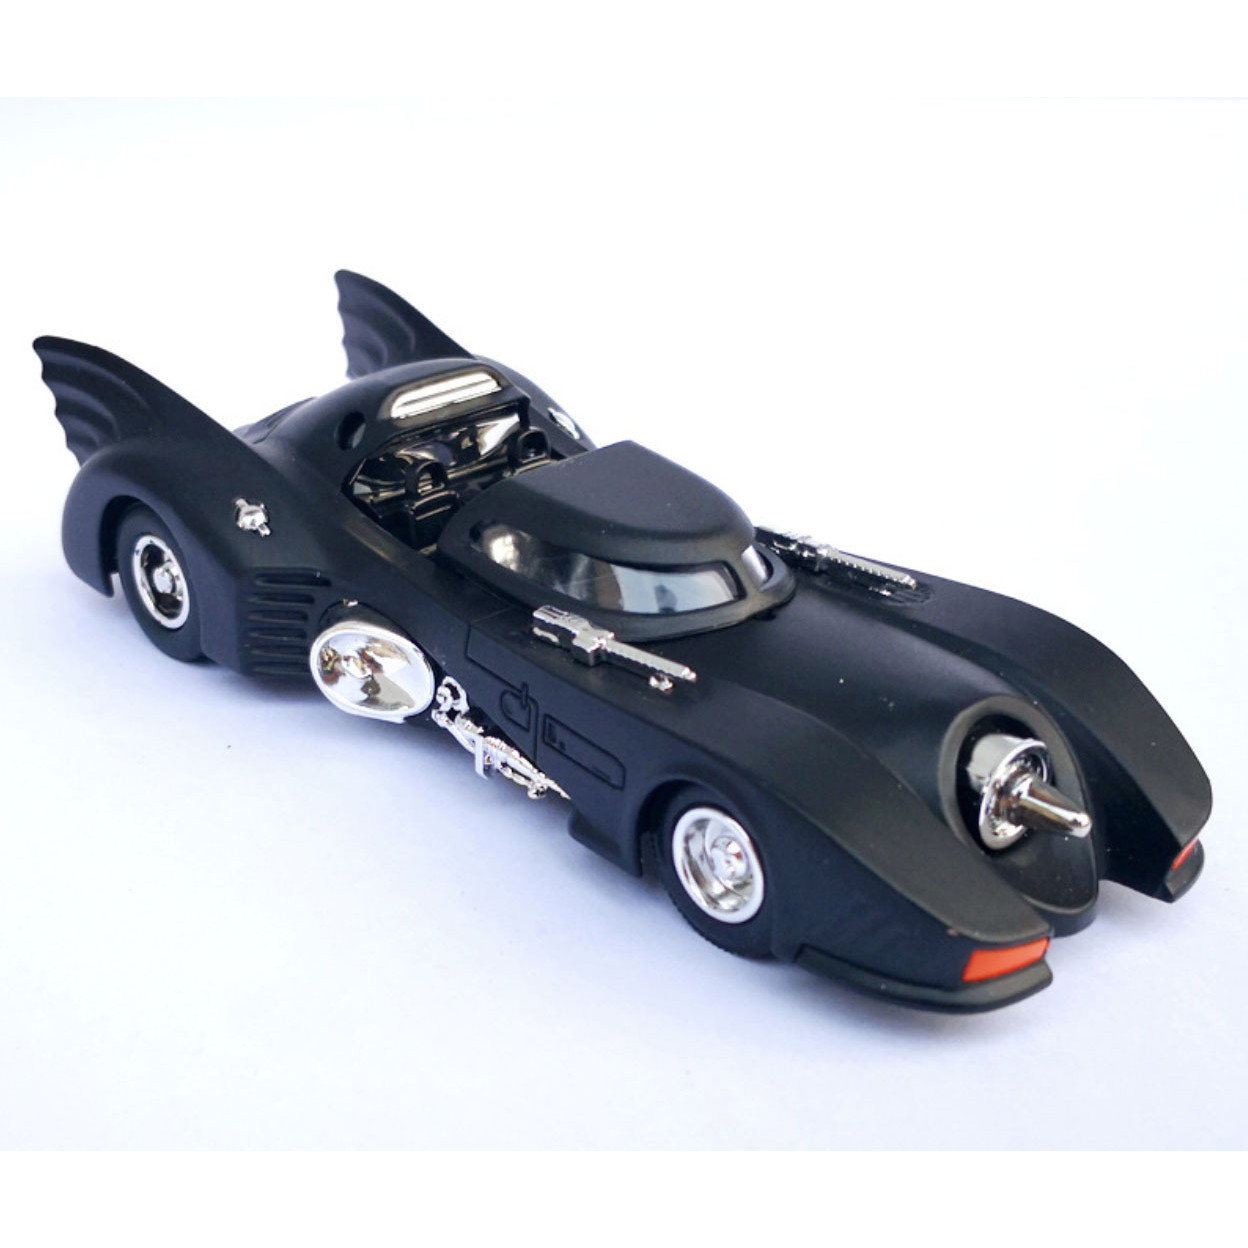 Mô hình xe oto chiến đấu Batman 13x5.5x3cm - Đen